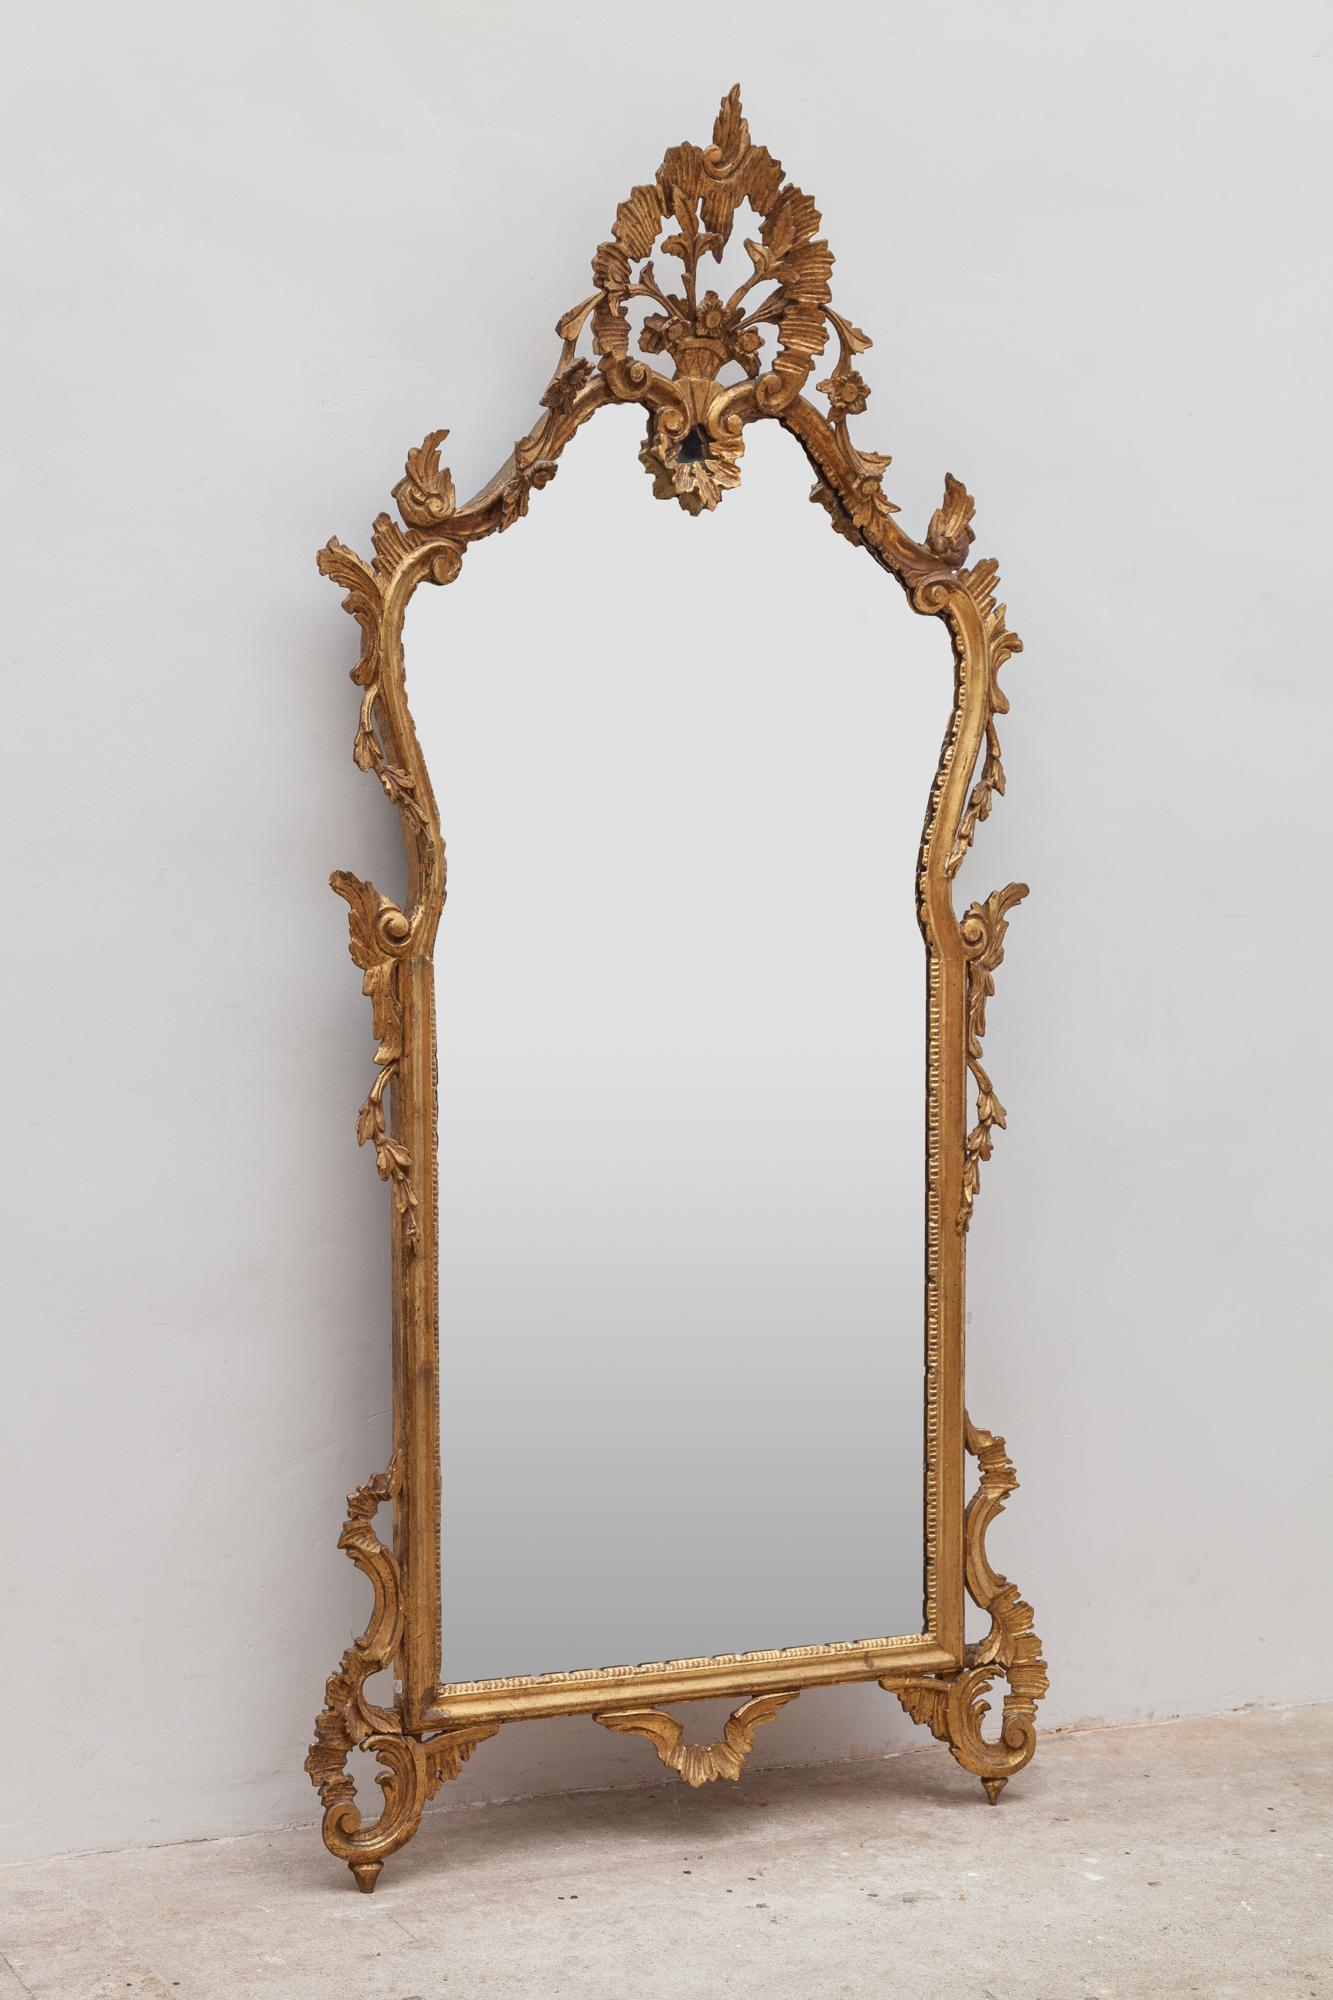 miroir du XIXe siècle de style rococo, cadre en métal doré représentant un panier de fleurs. Le miroir est en excellent état, sans rayures sur le verre.
Ce miroir néo-rococo français des années 1860 égayera magnifiquement tout espace. Dimension :